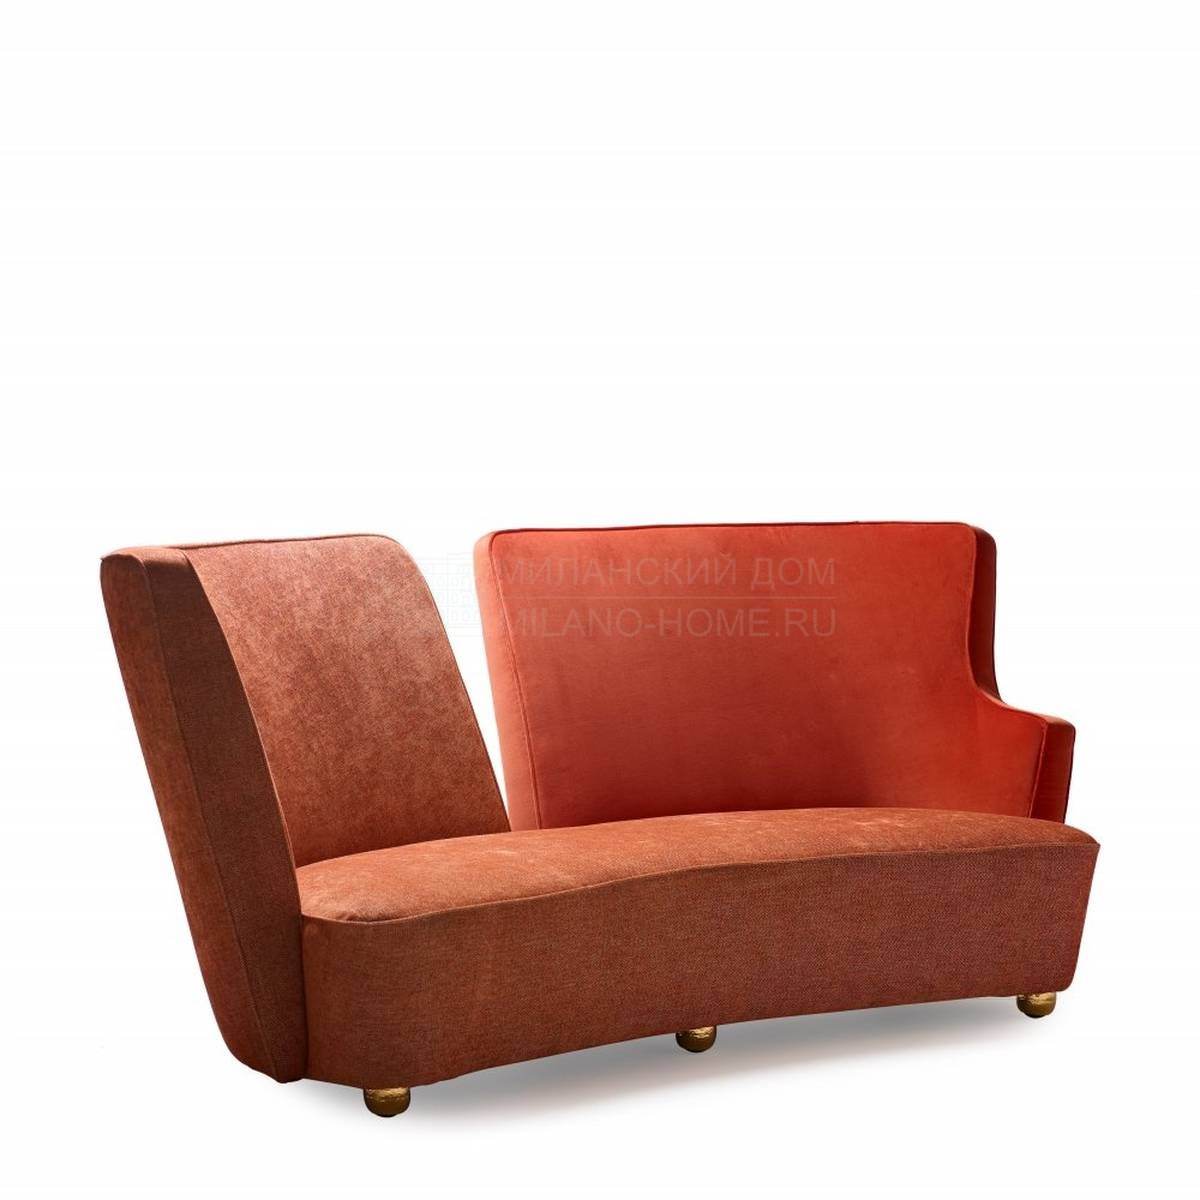 Прямой диван Baia sofa из Италии фабрики MARIONI